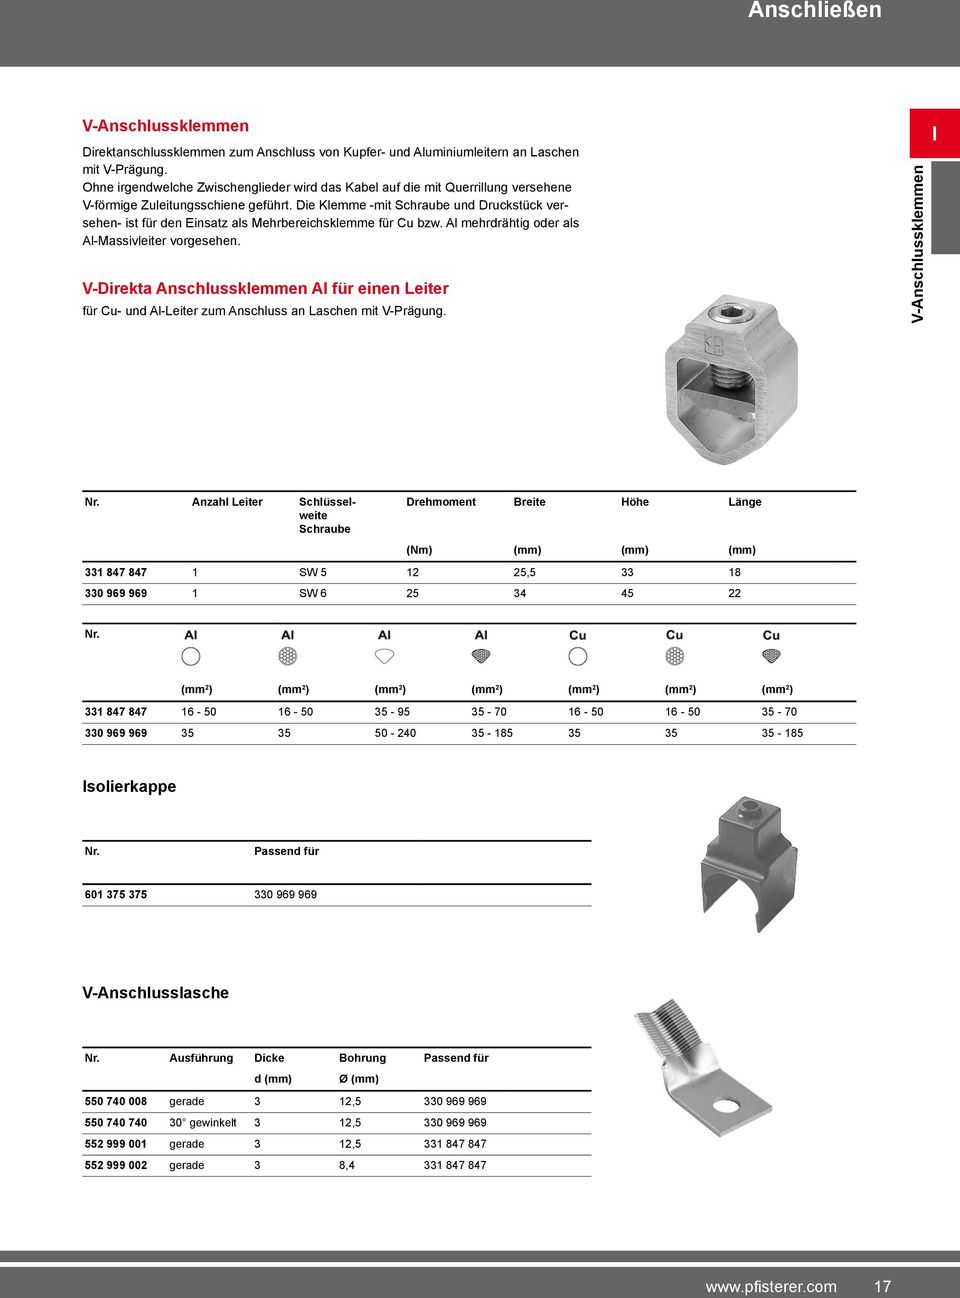 Die Klemme -mit Schraube und Druckstück versehen- ist für den Einsatz als Mehrbereichsklemme für Cu bzw. Al mehrdrähtig oder als Al-Massivleiter vorgesehen.